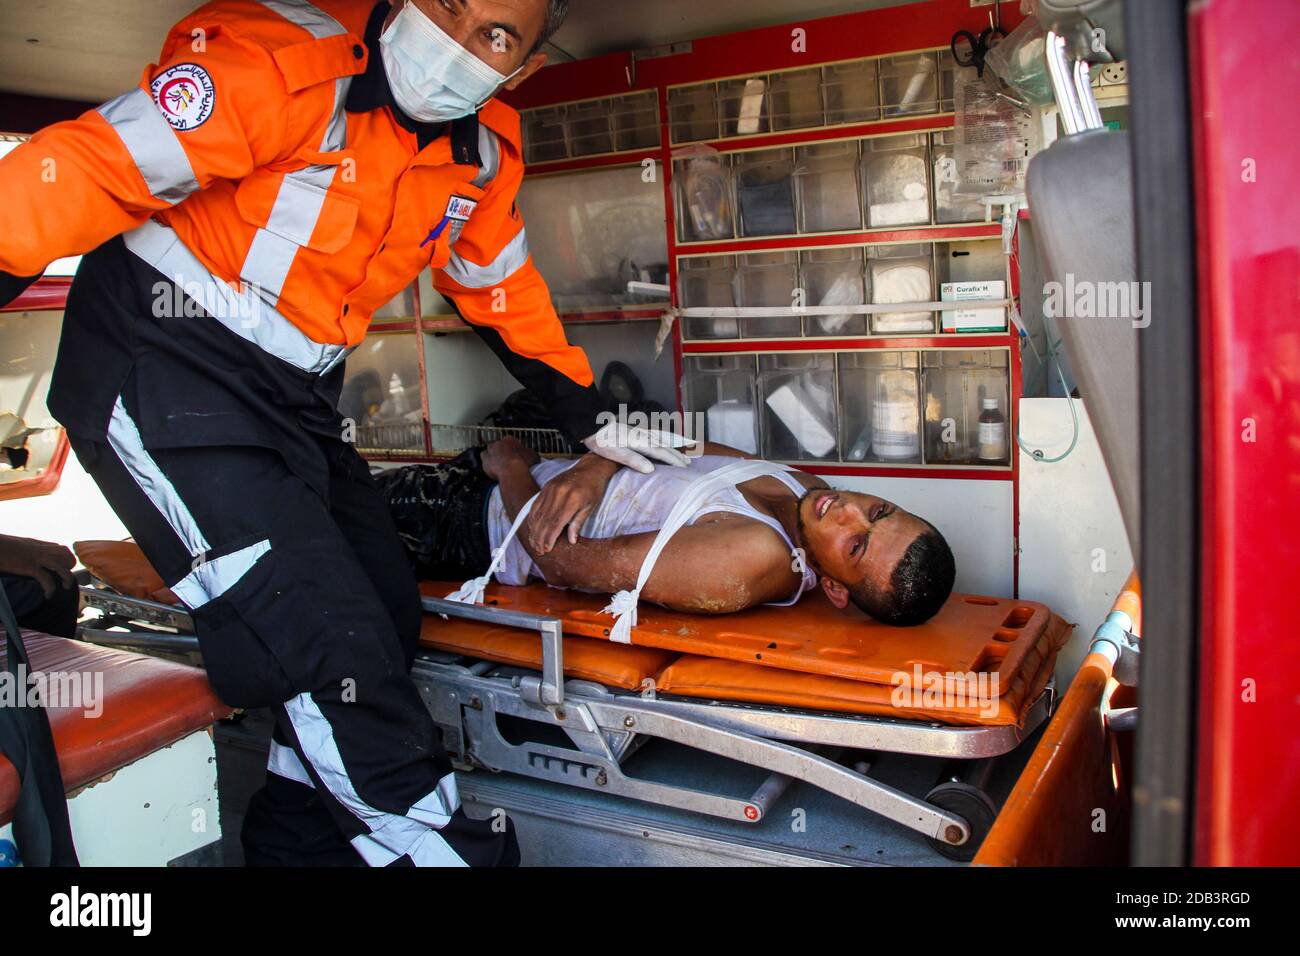 16 de noviembre de 2020: Gaza, Palestina. 16 de noviembre de 2020. Una tripulación de ambulancia, que forma parte de la Defensa Civil Palestina en el norte de Gaza, rescató a un pescador que sufrió fracturas en la espalda como resultado de su pesca en el mar frente a la zona de al Sudania, en el oeste de Jabalia. Los paramédicos proporcionaron tratamiento médico in situ, antes de trasladar al paciente al hospital indonesio en el norte de la Franja de Gaza (imagen de crédito: © Ahmad Hasaballah/IMAGESLIVE via ZUMA Wire) Foto de stock